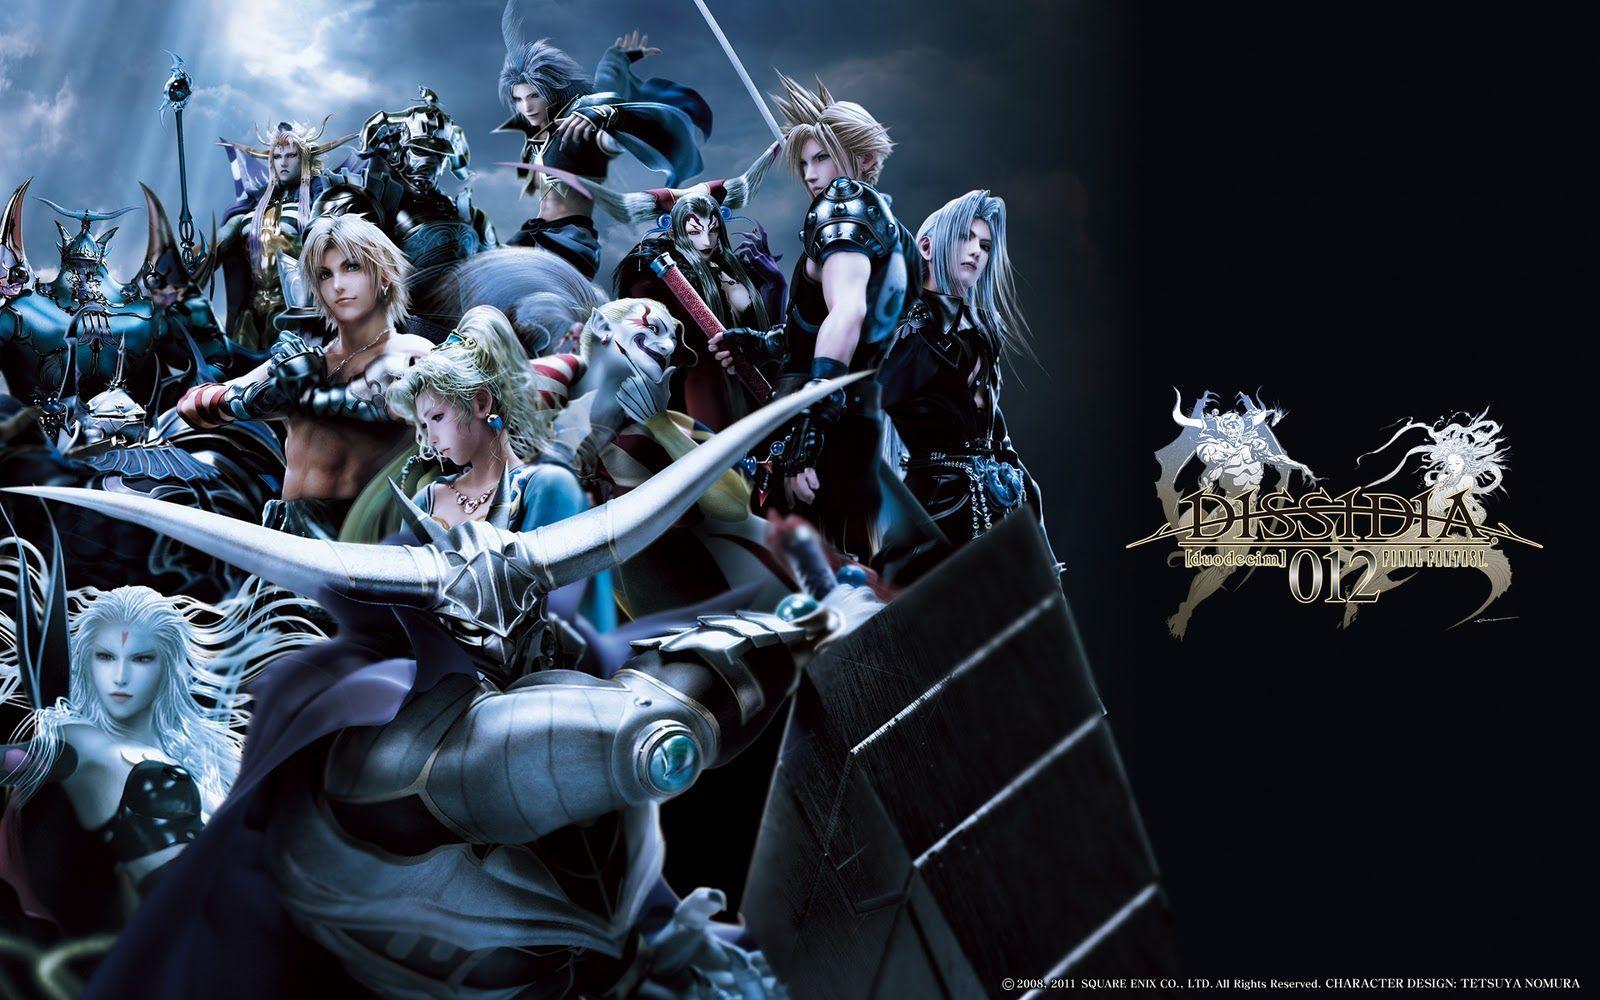 Hình nền Final Fantasy 1600x1000 Tải xuống miễn phí chất lượng cao.  Cuối cùng